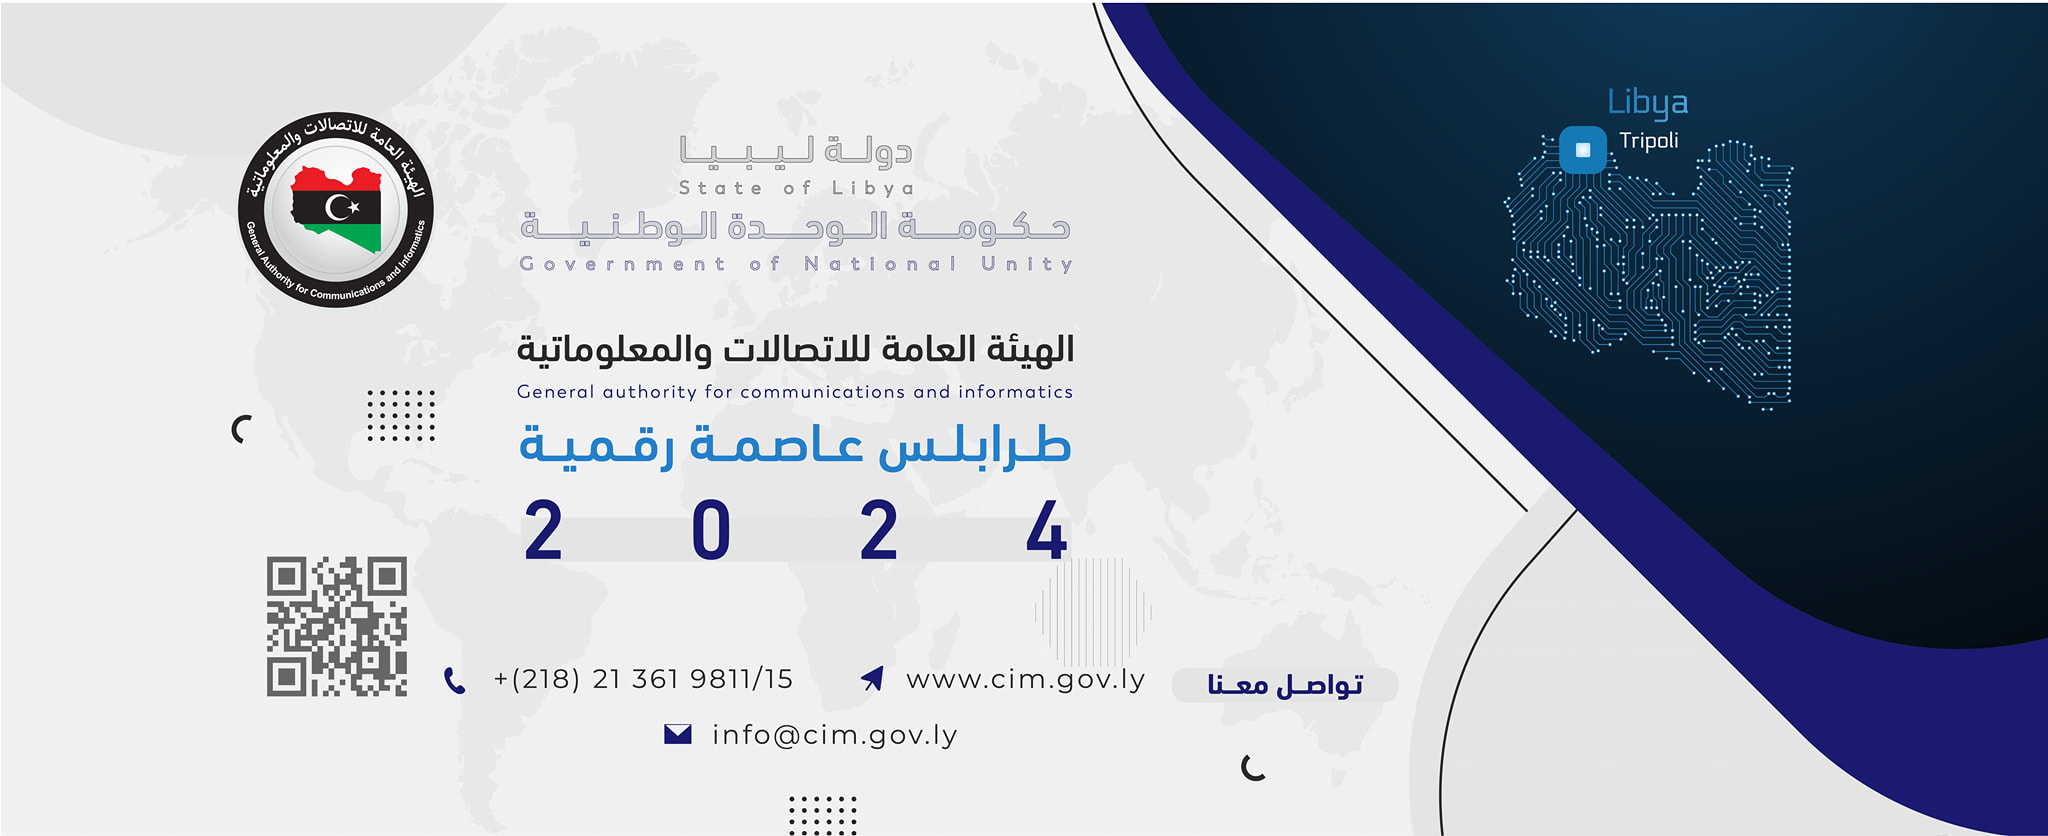  الهيئة العامة للاتصالات والمعلوماتية  تعلن إطلاق موقع "السياسة الوطنية للذكاء الاصطناعي لدولة ليبيا " بمناسبة الذكرى السنوية  المقرر يوم (17) مايو  .